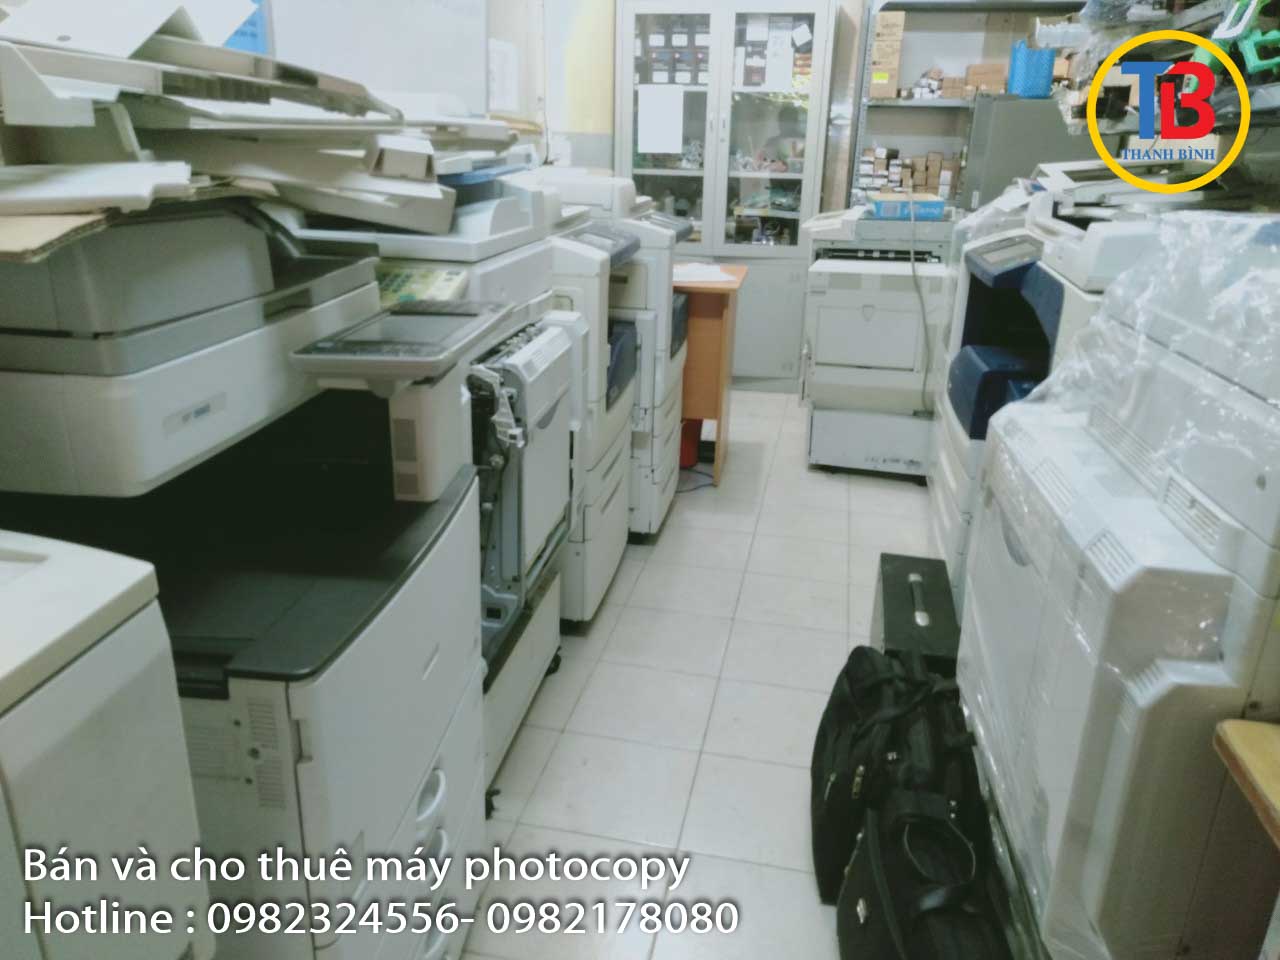 Thu mua máy in, máy photocopy cũ giá tốt tại Hà Nội